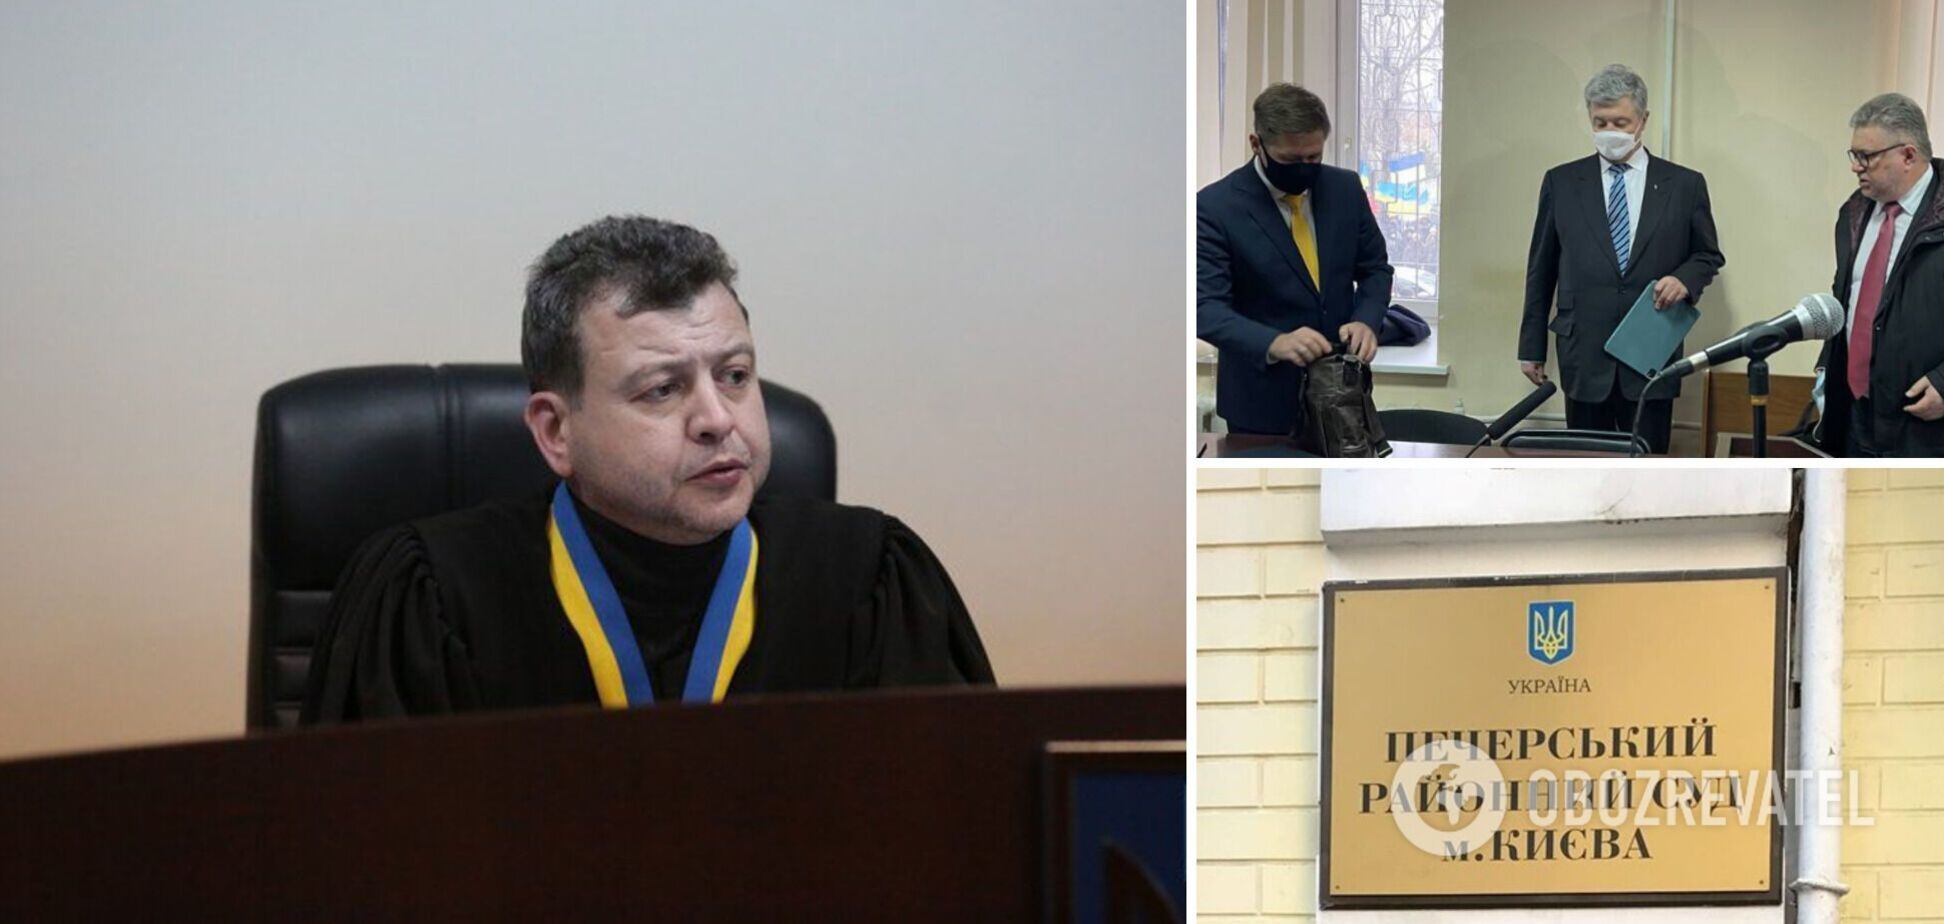 Судді Соколову, який обирає запобіжний захід Порошенку, раптово стало зле і викликали медиків, – Турчинов